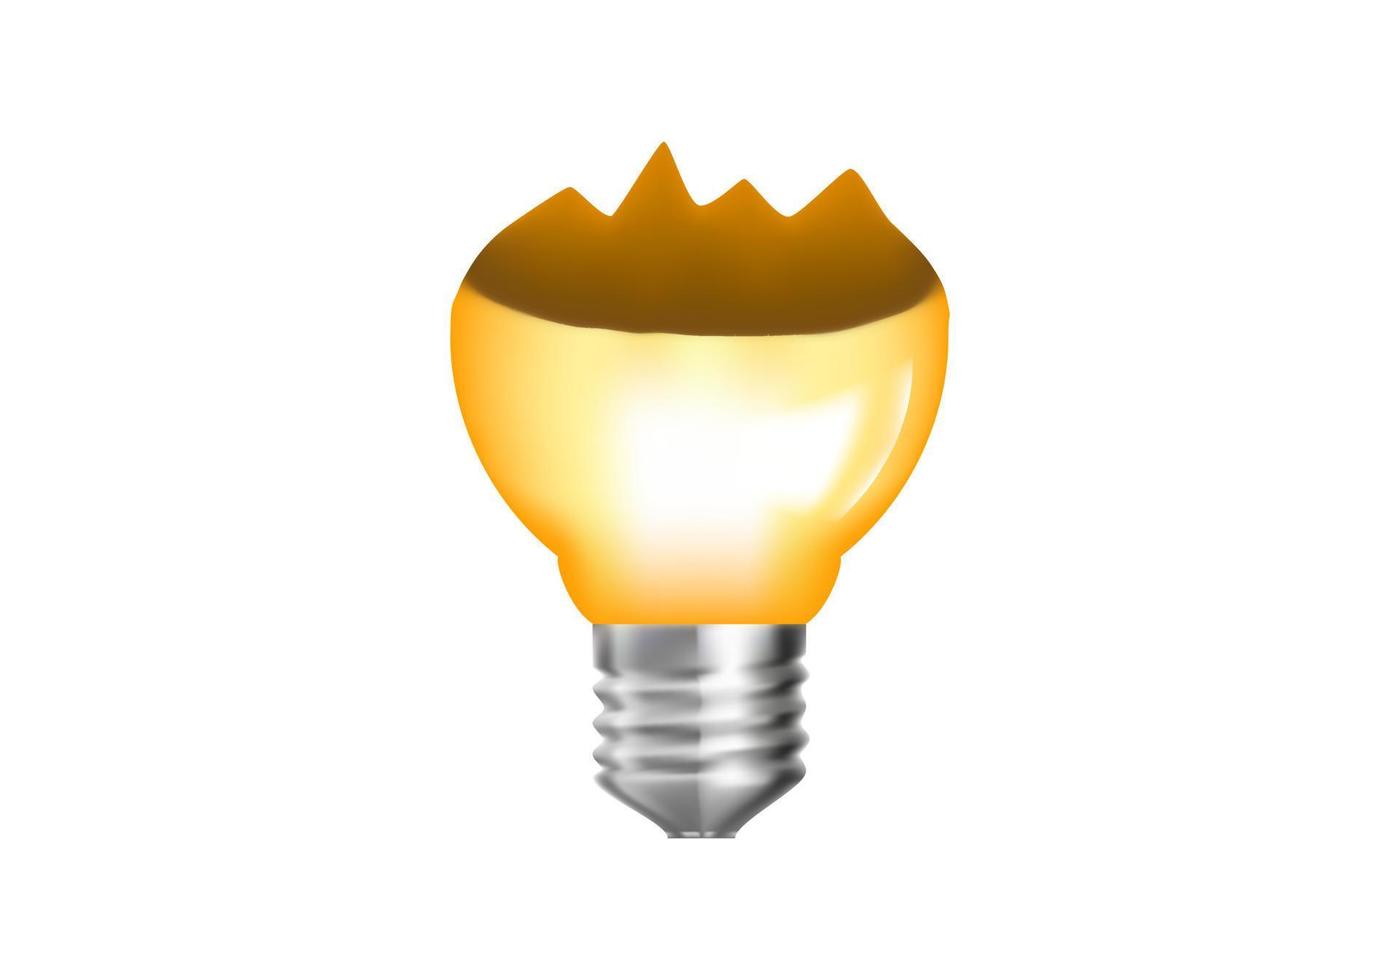 icône d'ampoule cassée jaune 3d. style de dessin animé minimal. idée, solution, entreprise, concept de stratégie. vecteur